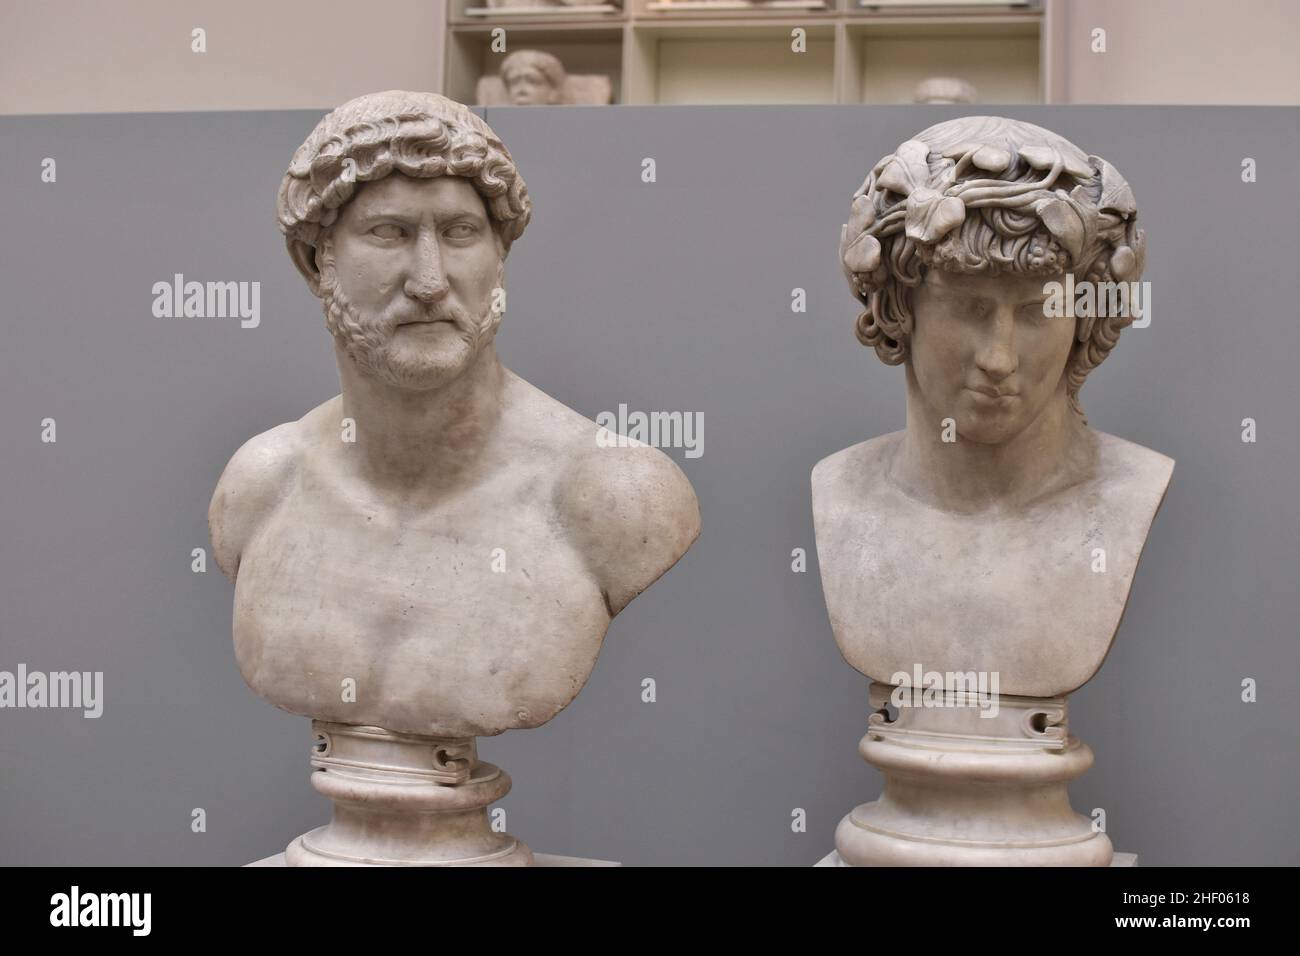 Marmorbüsten des römischen Imperators Hadrian und der griechischen Jugend Antinoos wurden im British Museum in London ausgestellt. Stockfoto